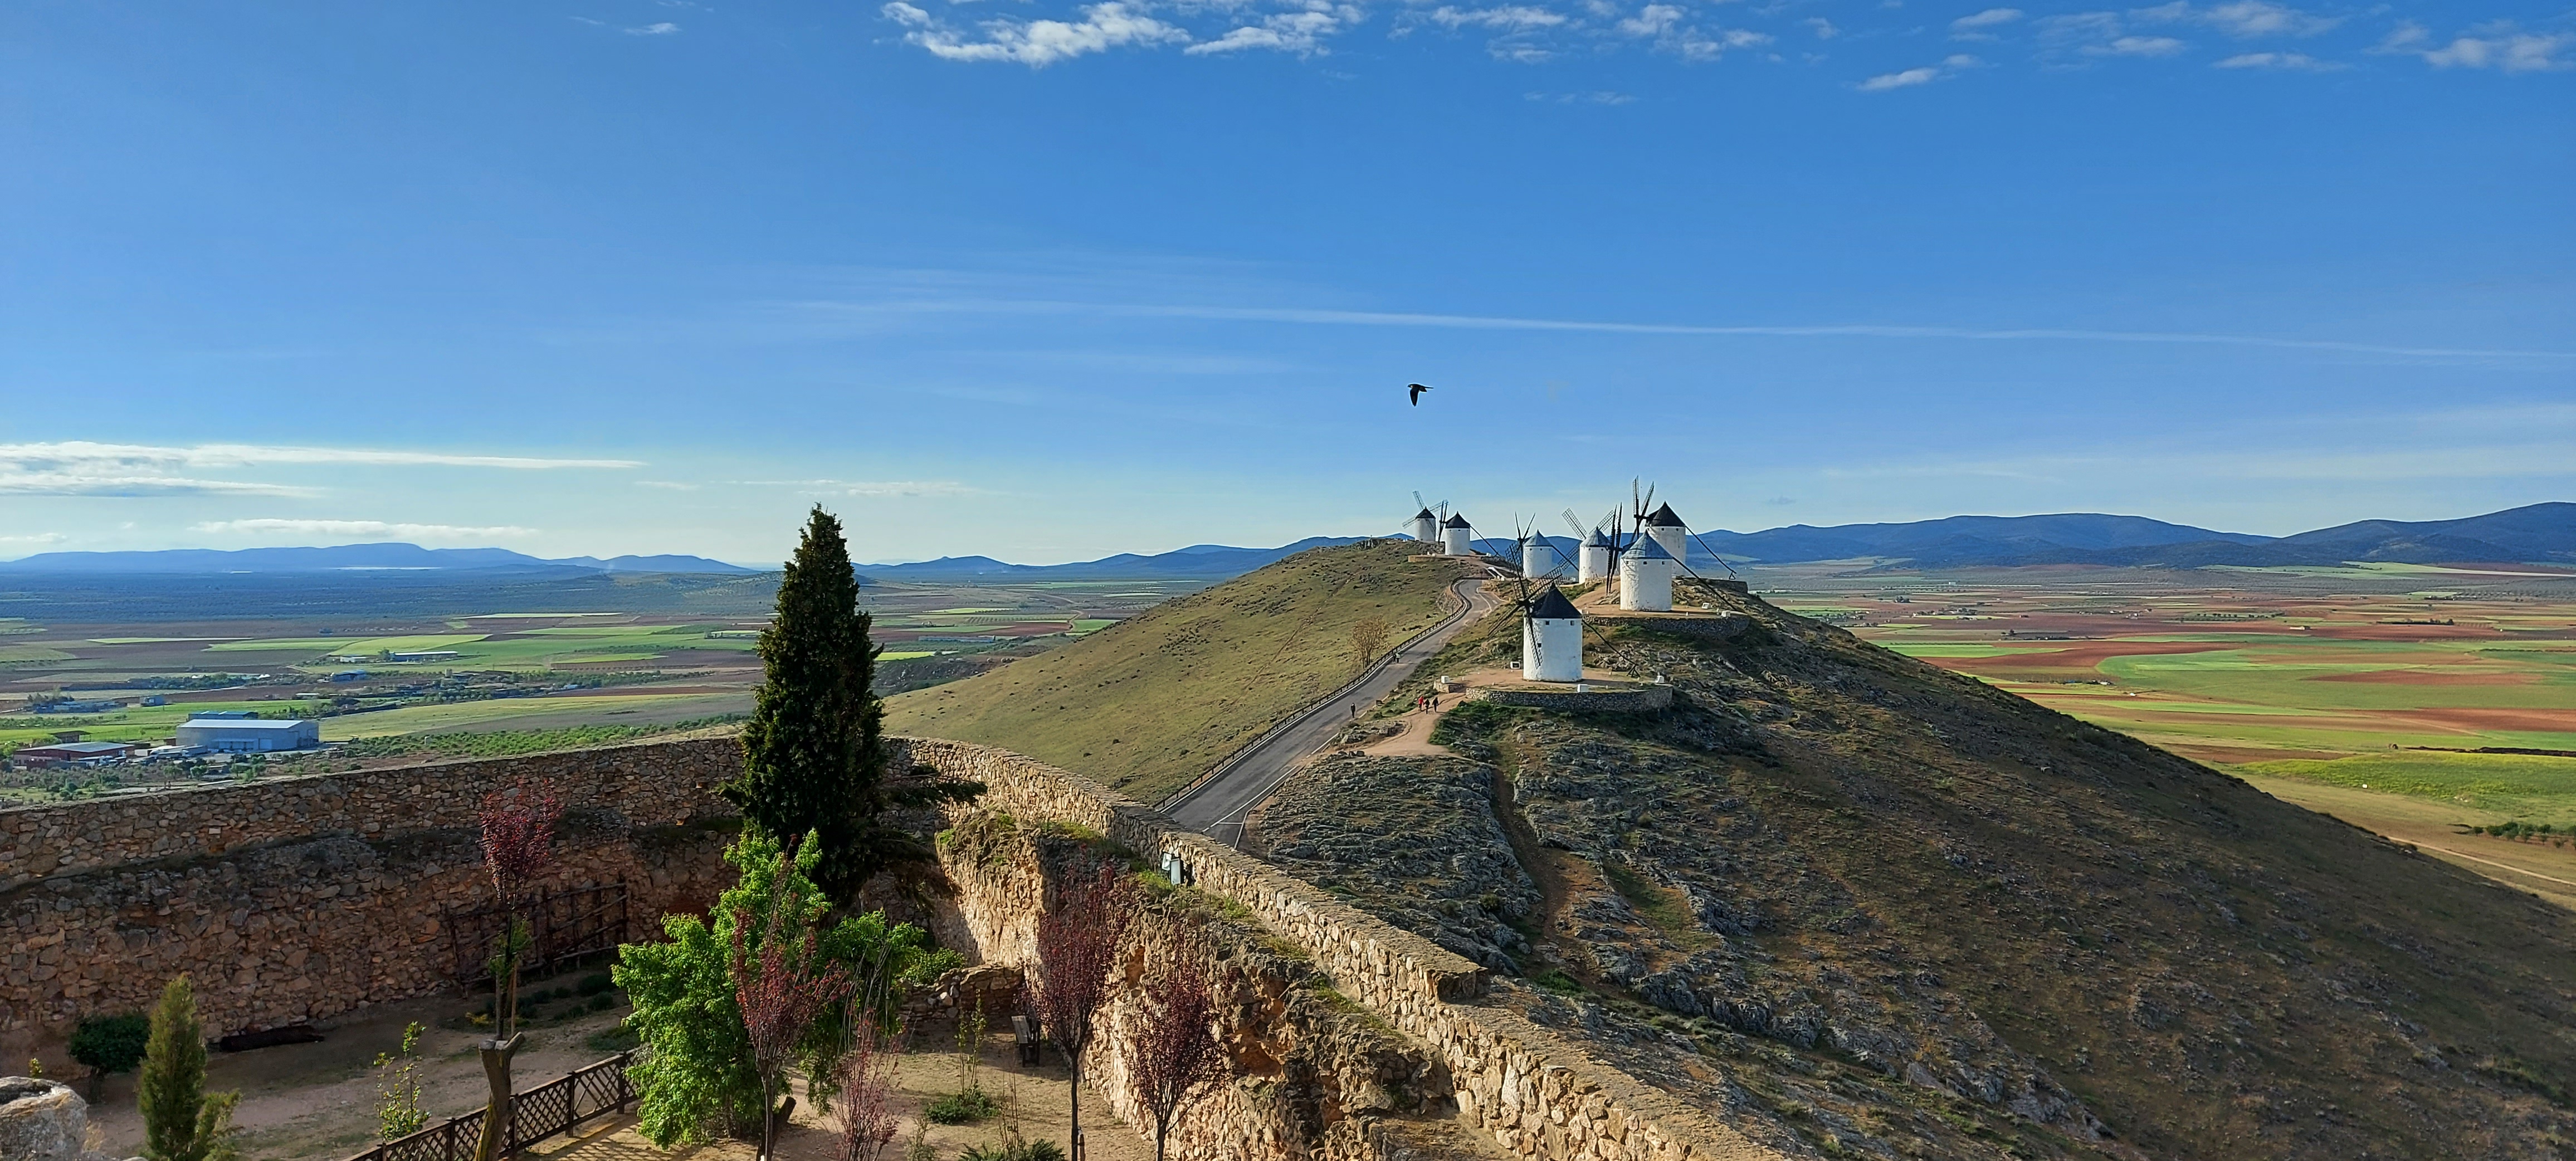 Fig.14.Vista panorámica del Cerro Calderico en Consuegra. Oficina de Turismo. Jose Manuel Perulero